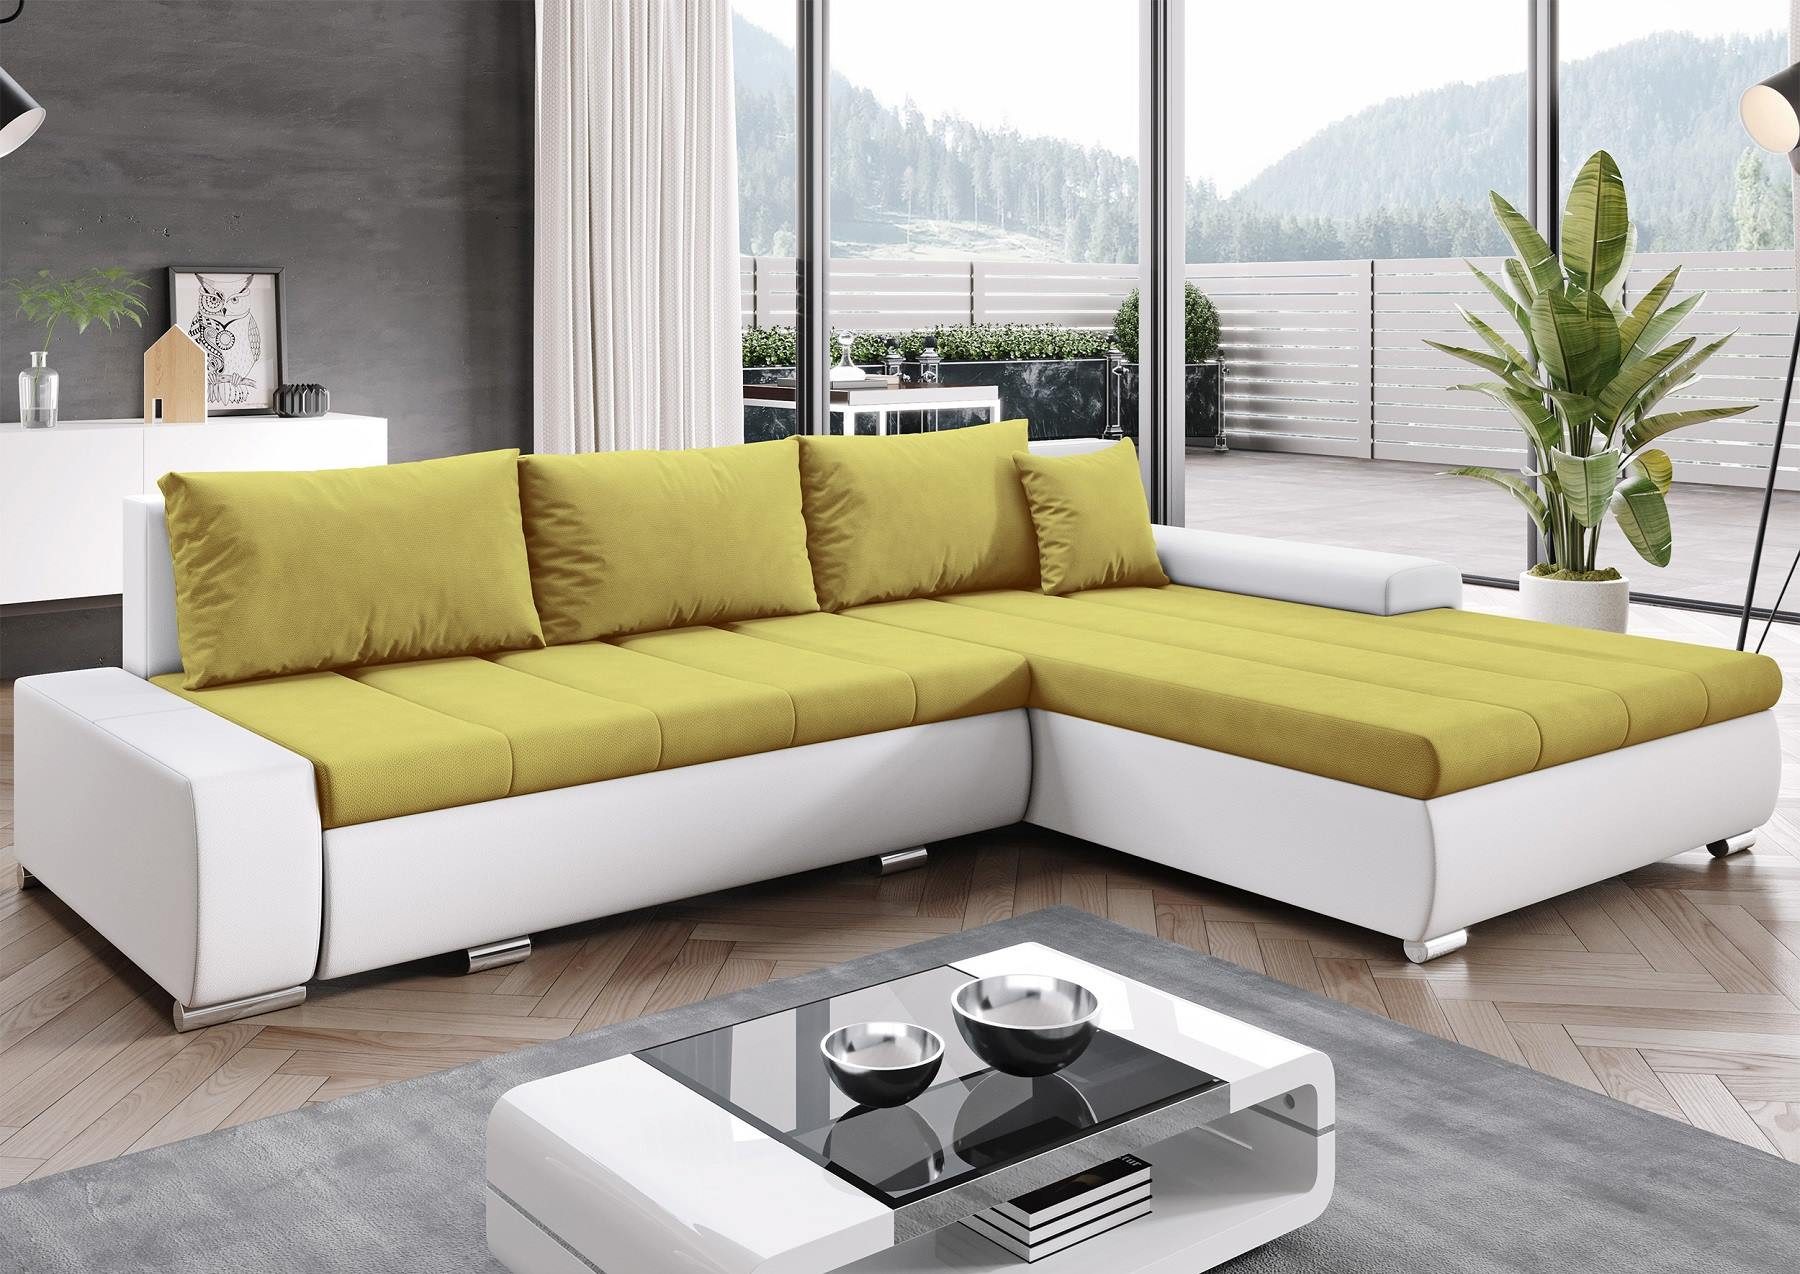 Furnix Ecksofa TOMMASO Sofa mit Schlaffunktion Bettkasten Kissen L-Couch, BxHxT 297x85x210 cm, Liegefläche 150x255 cm, bequem